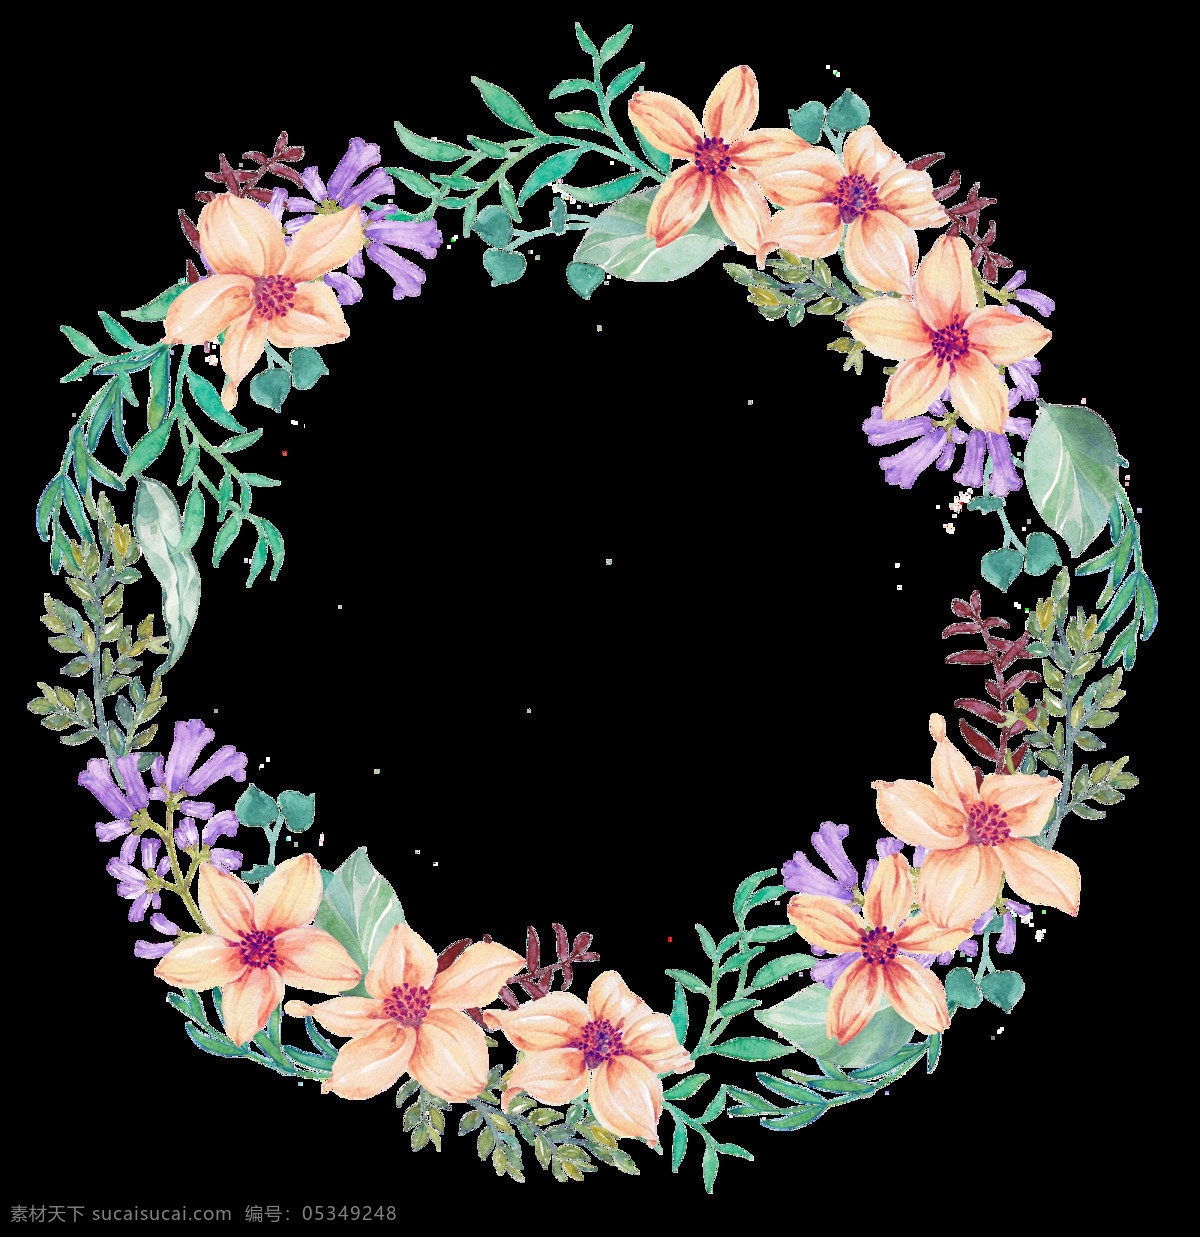 丰富 花卉 花环 卡通 透明 装饰 设计素材 背景素材